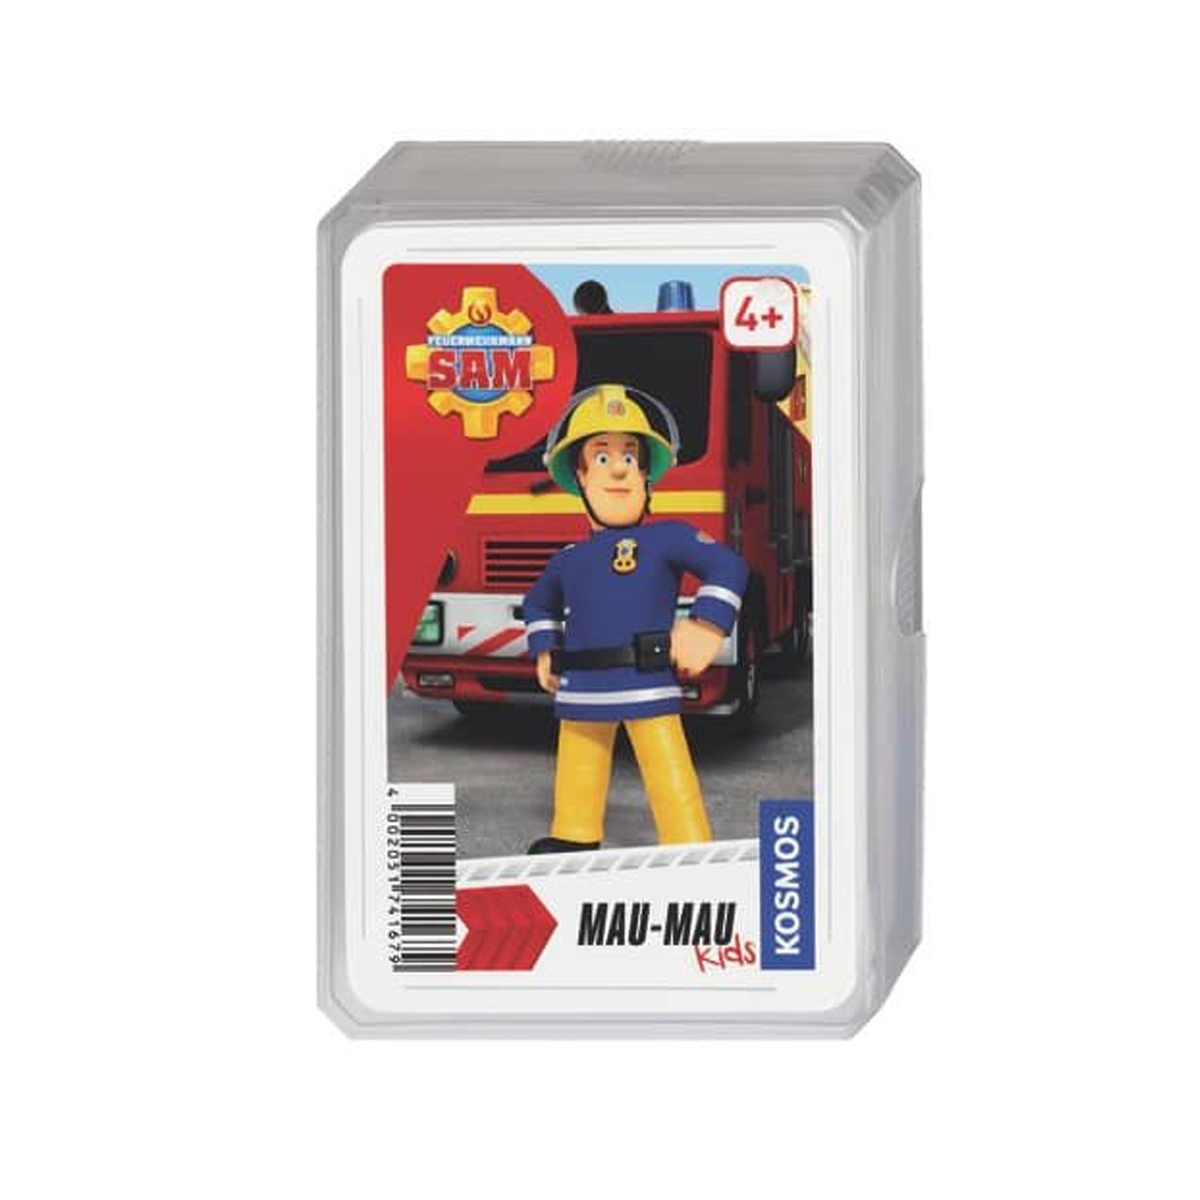 Feuerwehrmann Sam Mau Mau Kartenspiel von Kosmos